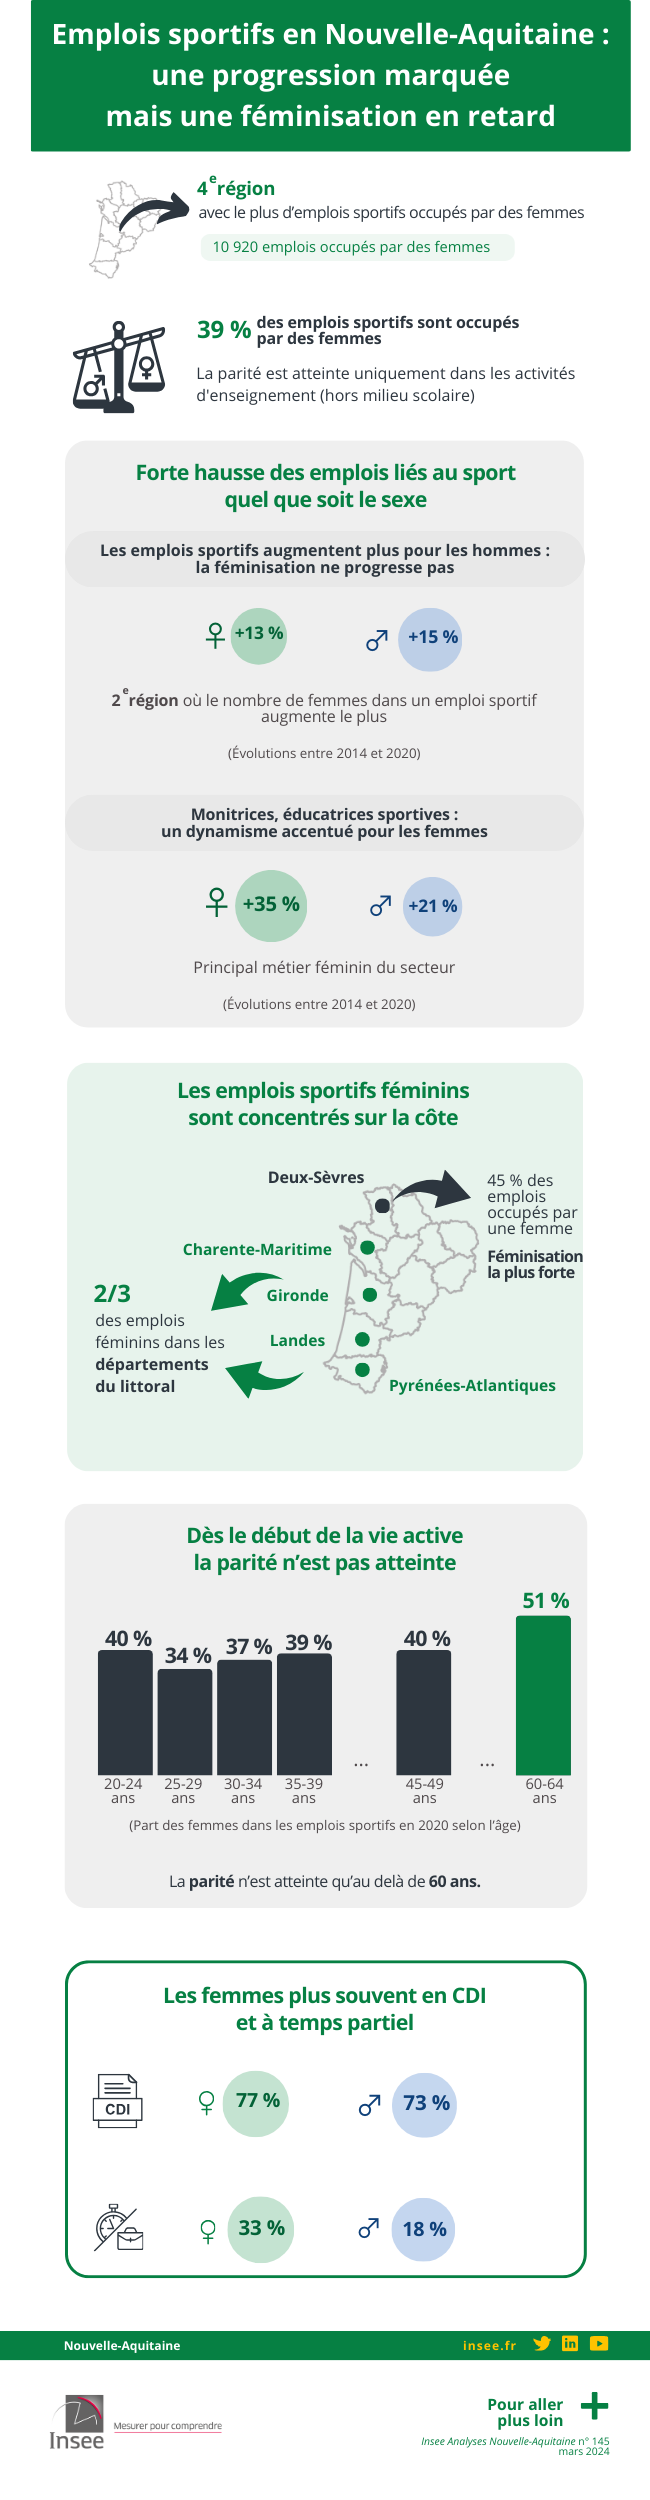 Emplois sportifs en Nouvelle-Aquitaine : une progression marquée mais une féminisation en retard.